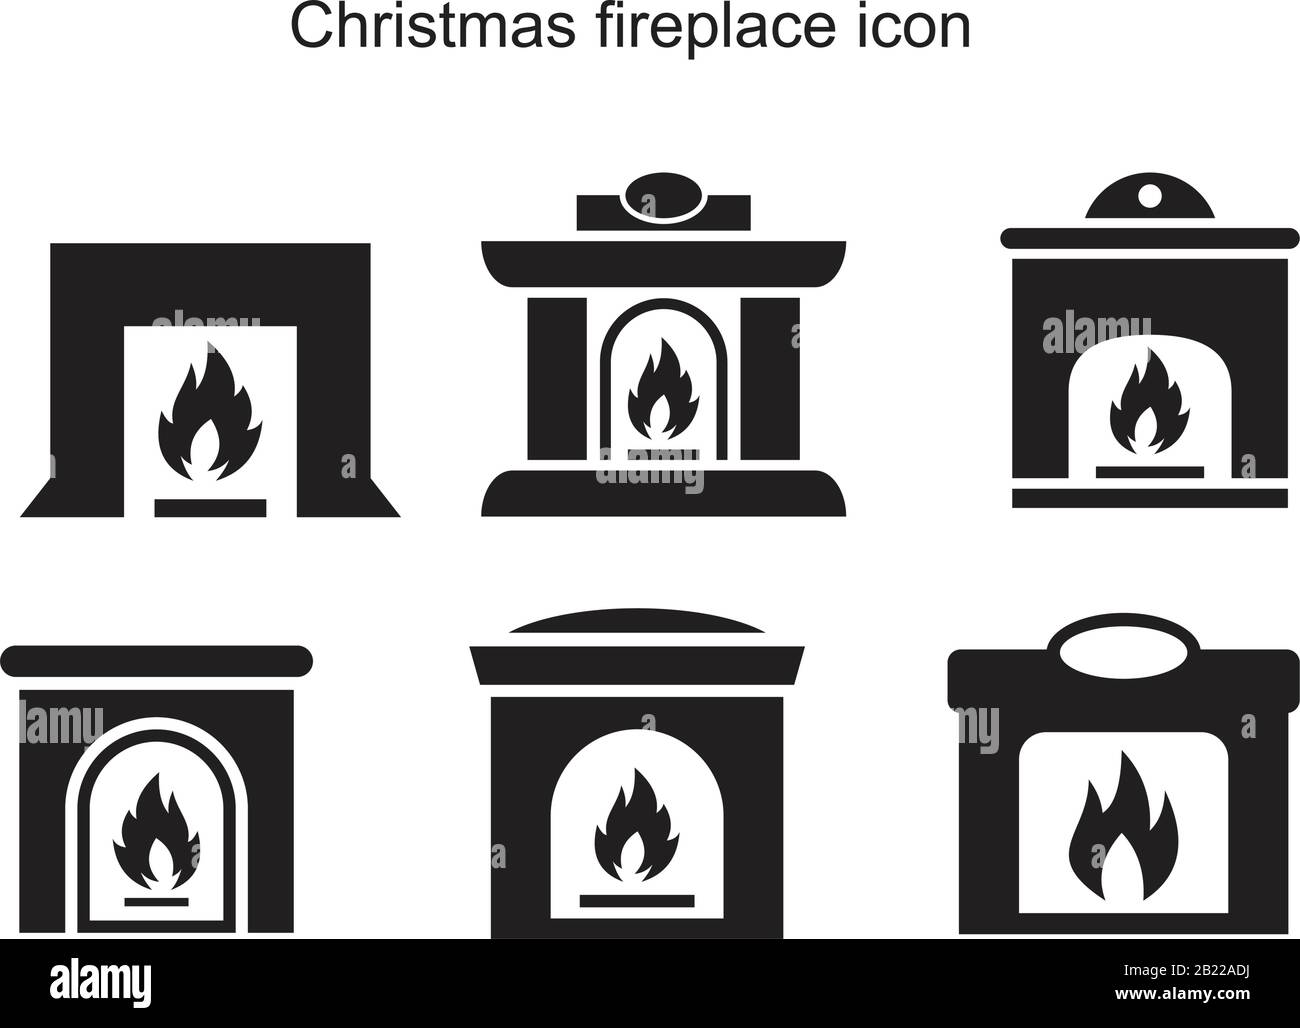 Modèle D'Icône de cheminée de Noël noir modifiable. Symbole D'Icône de cheminée de Noël illustration vectorielle plate pour le graphisme et le web design. Illustration de Vecteur